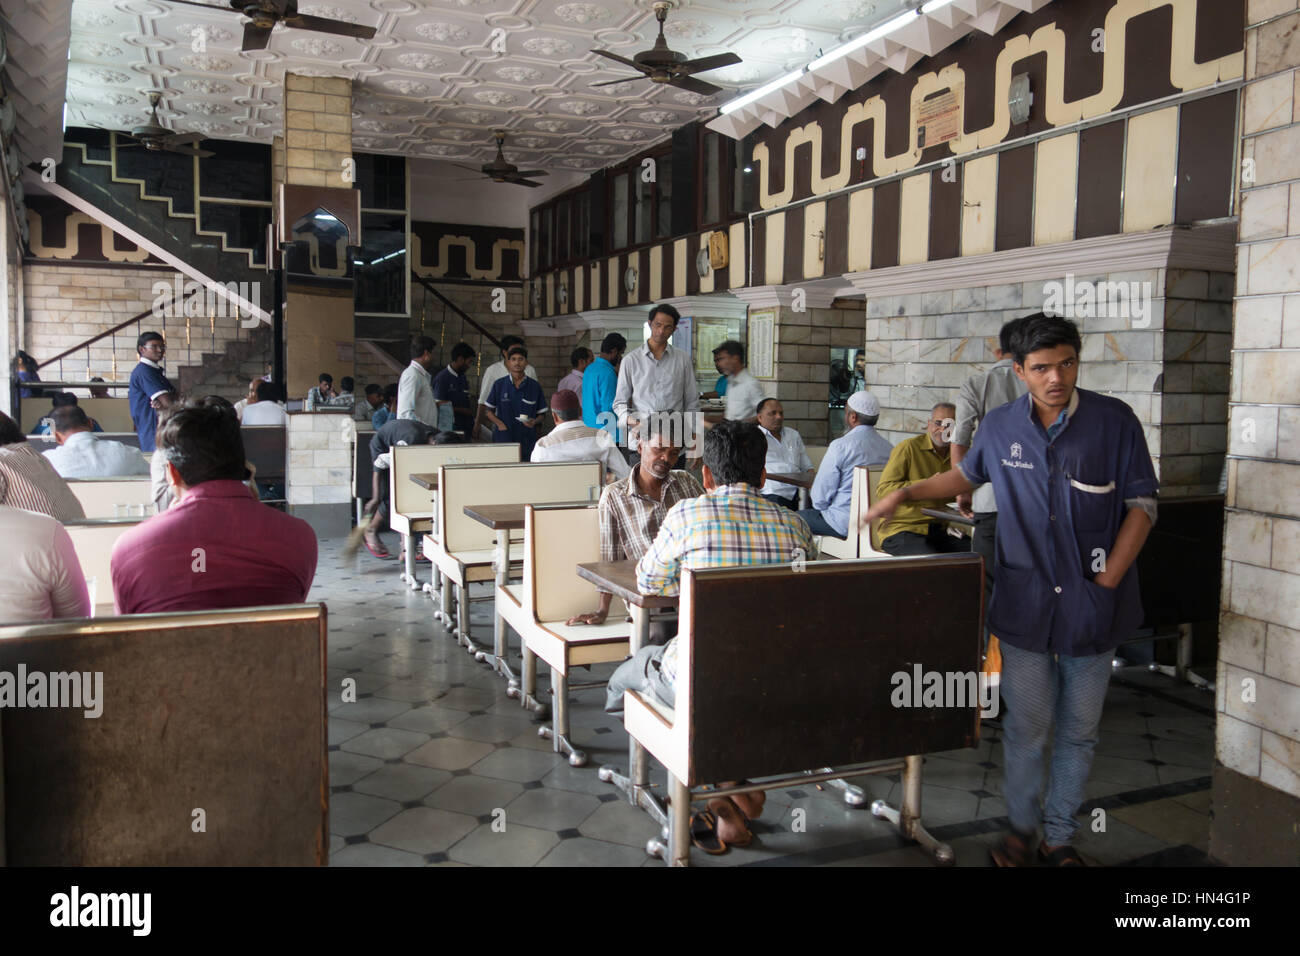 Hôtel à l'intérieur de la scène, un populaire Shadab Irani Cafe à Hyderabad, Inde Banque D'Images